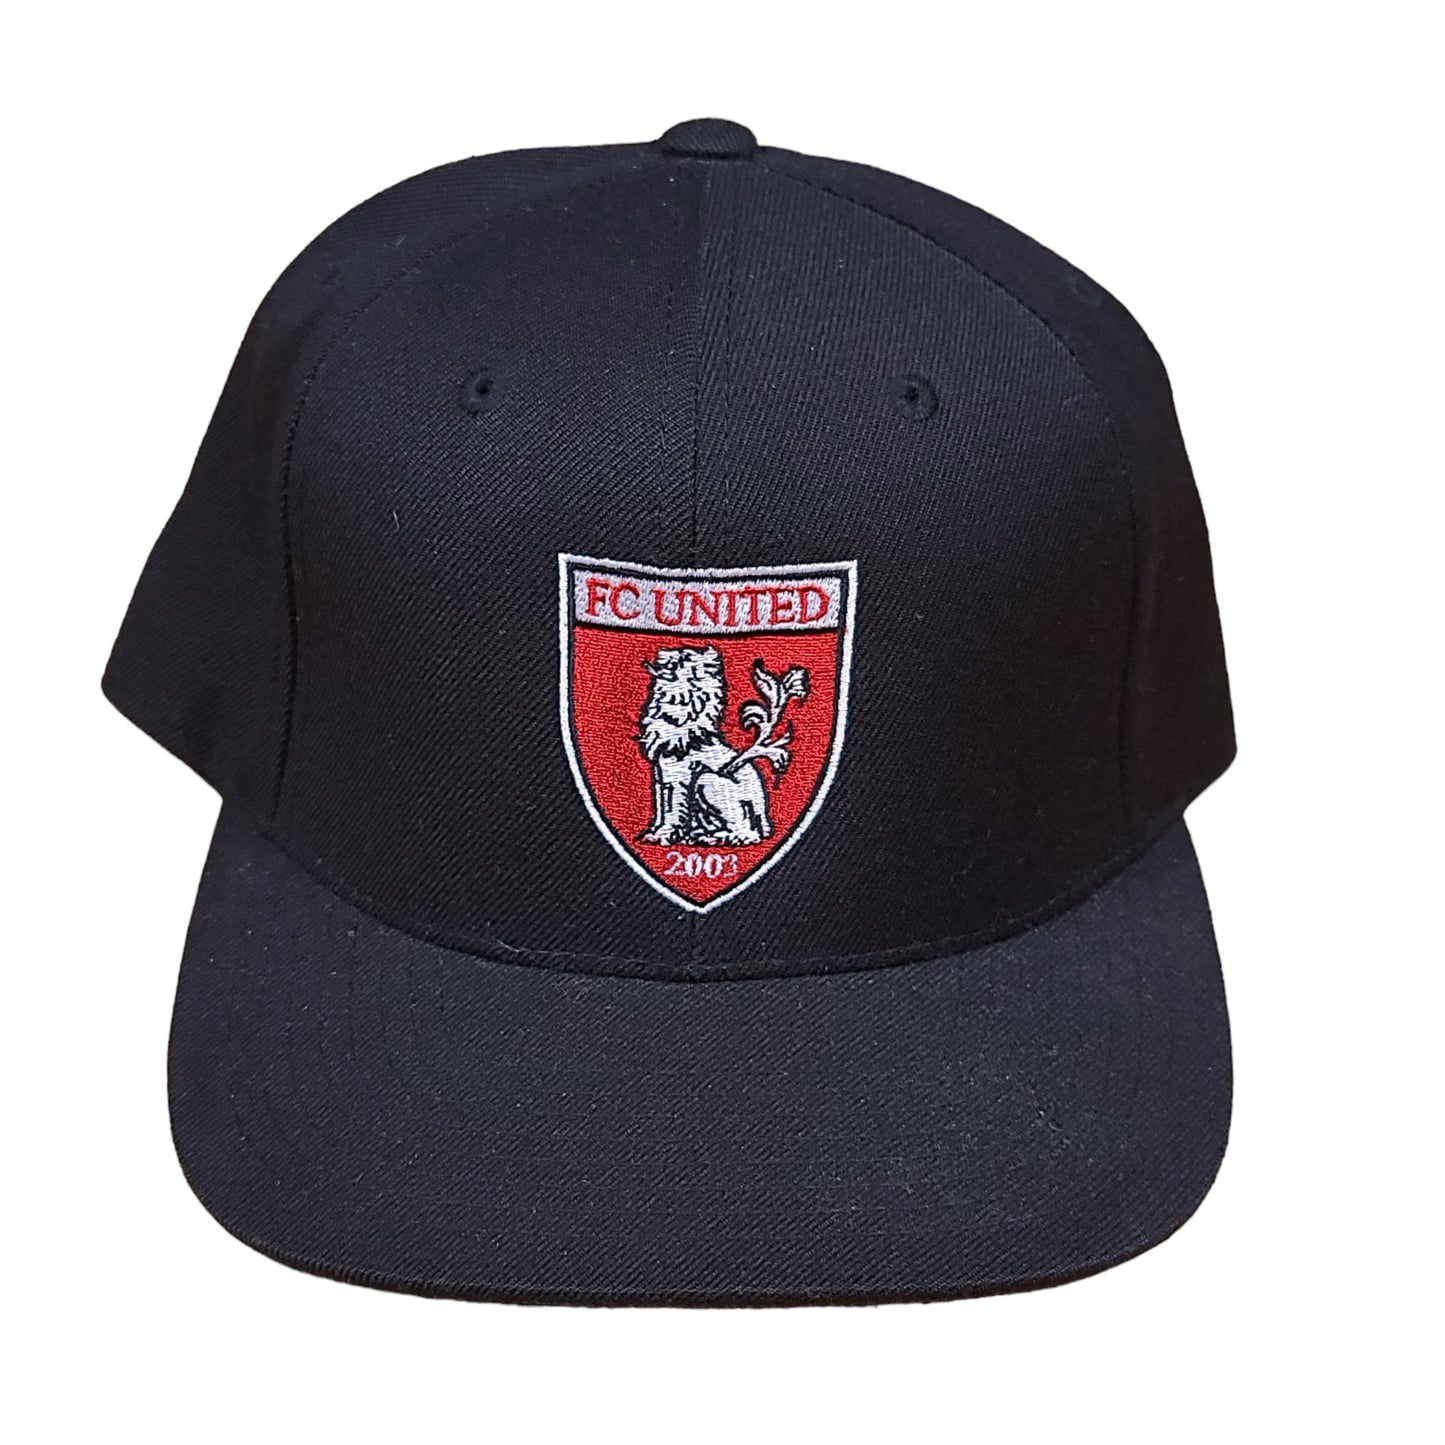 Vintage FC United 2003 Black Snap Back Hat